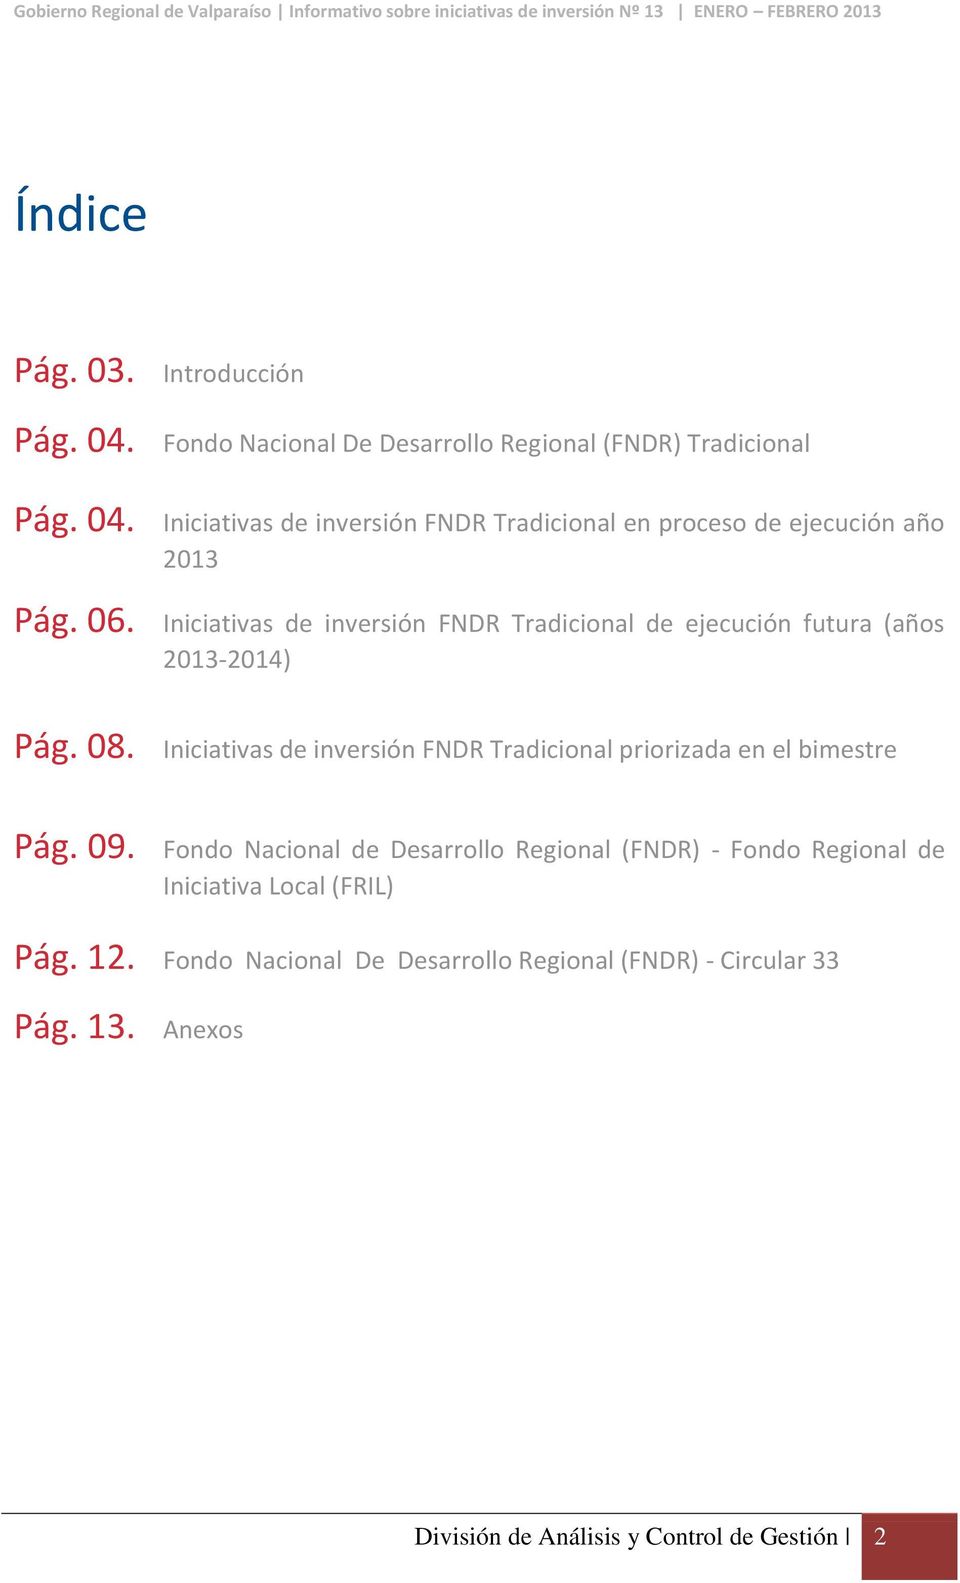 Iniciativas de inversión FNDR Tradicional priorizada en el bimestre Pág. 09.